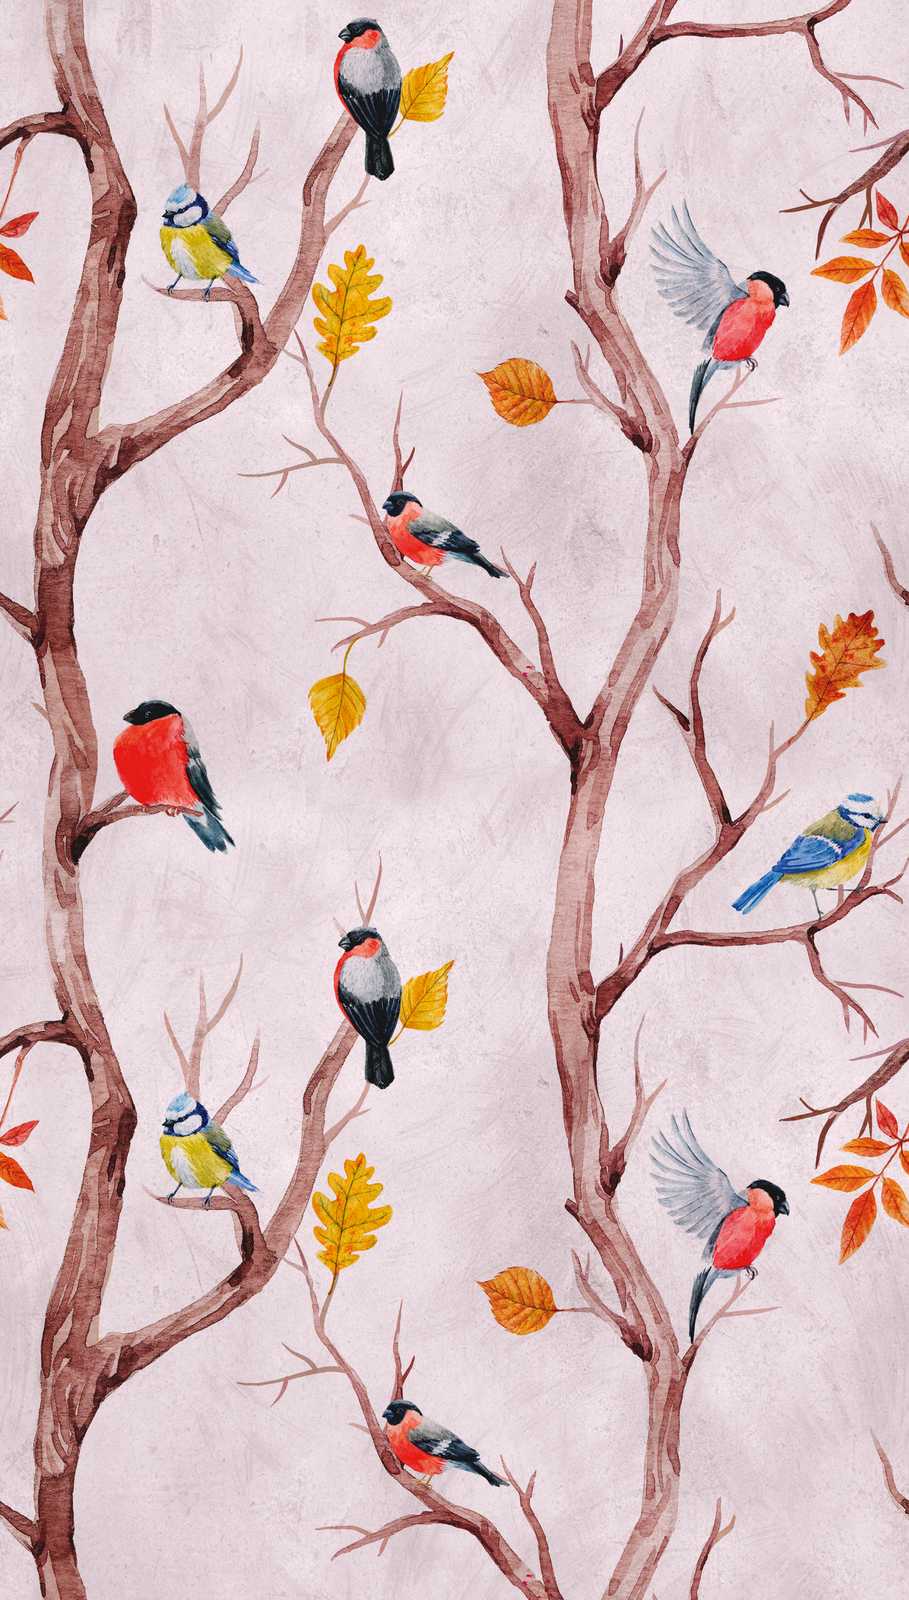             Behang nieuwigheid - motiefbehang met vogelmotief in aquarelstijl
        